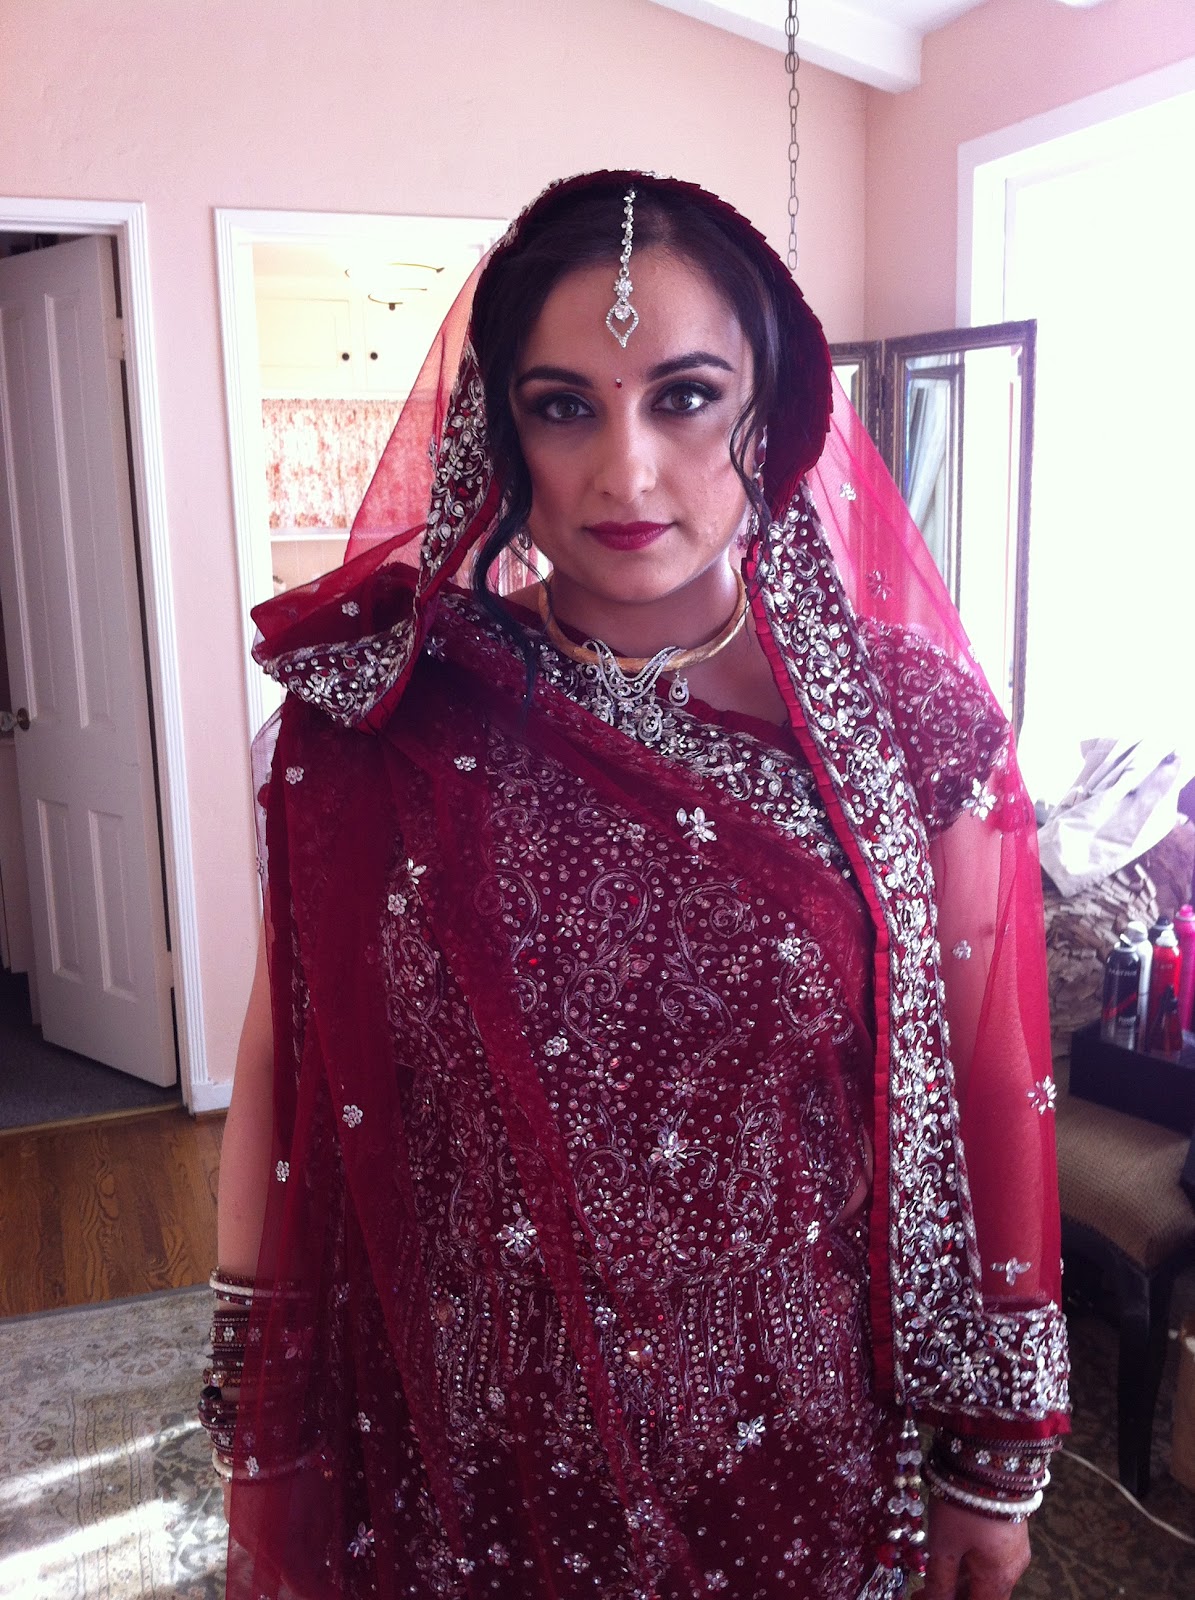 Swell Beauty Blog: Indian Wedding Sneak Peek!!